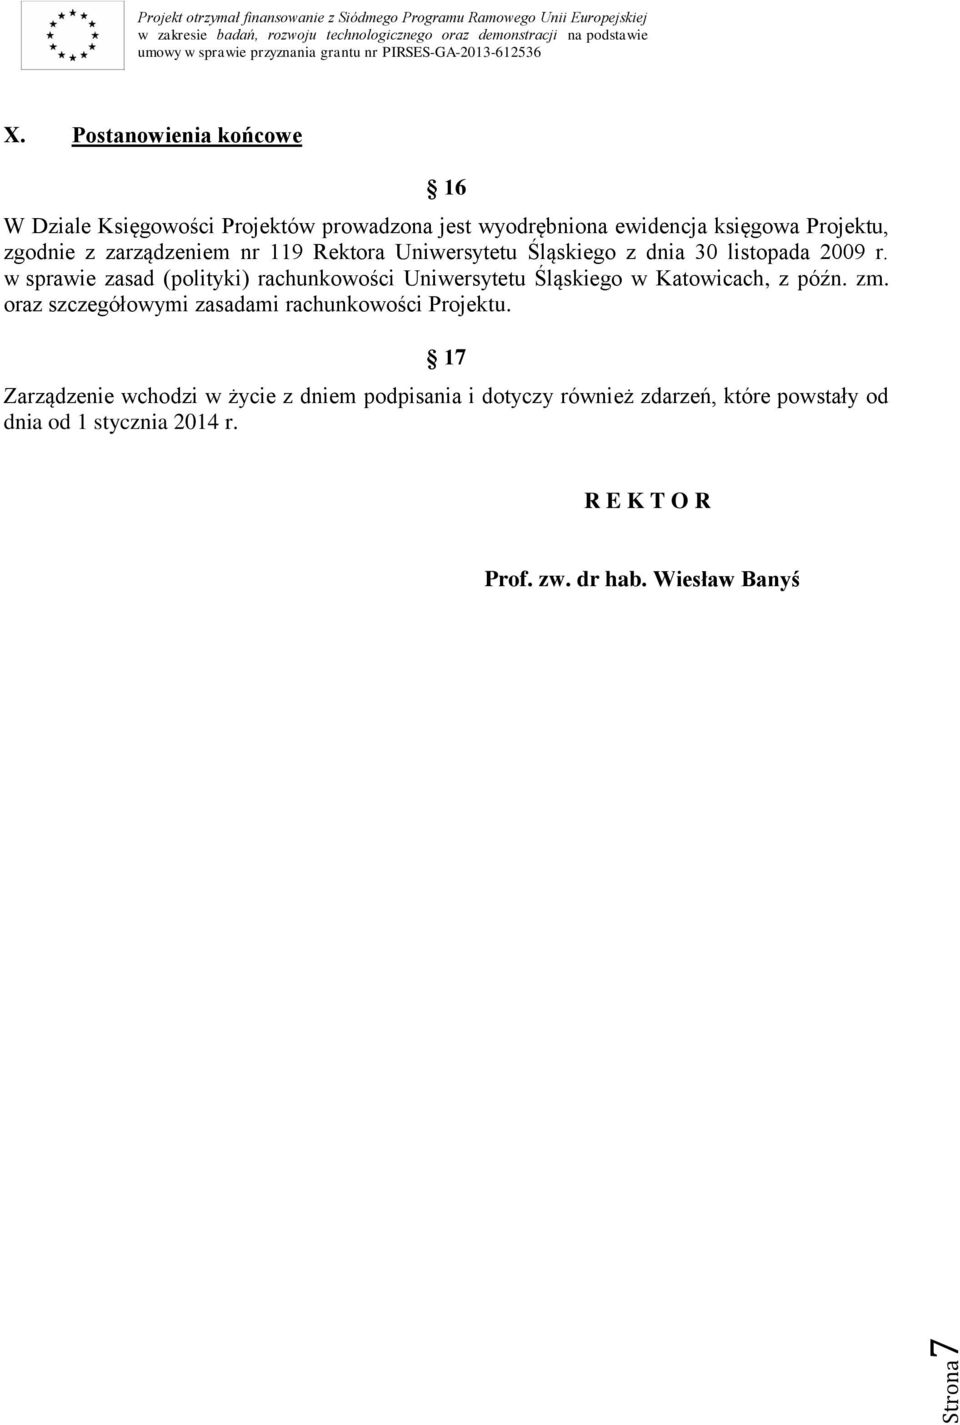 zarządzeniem nr 119 Rektora Uniwersytetu Śląskiego z dnia 30 listopada 2009 r.